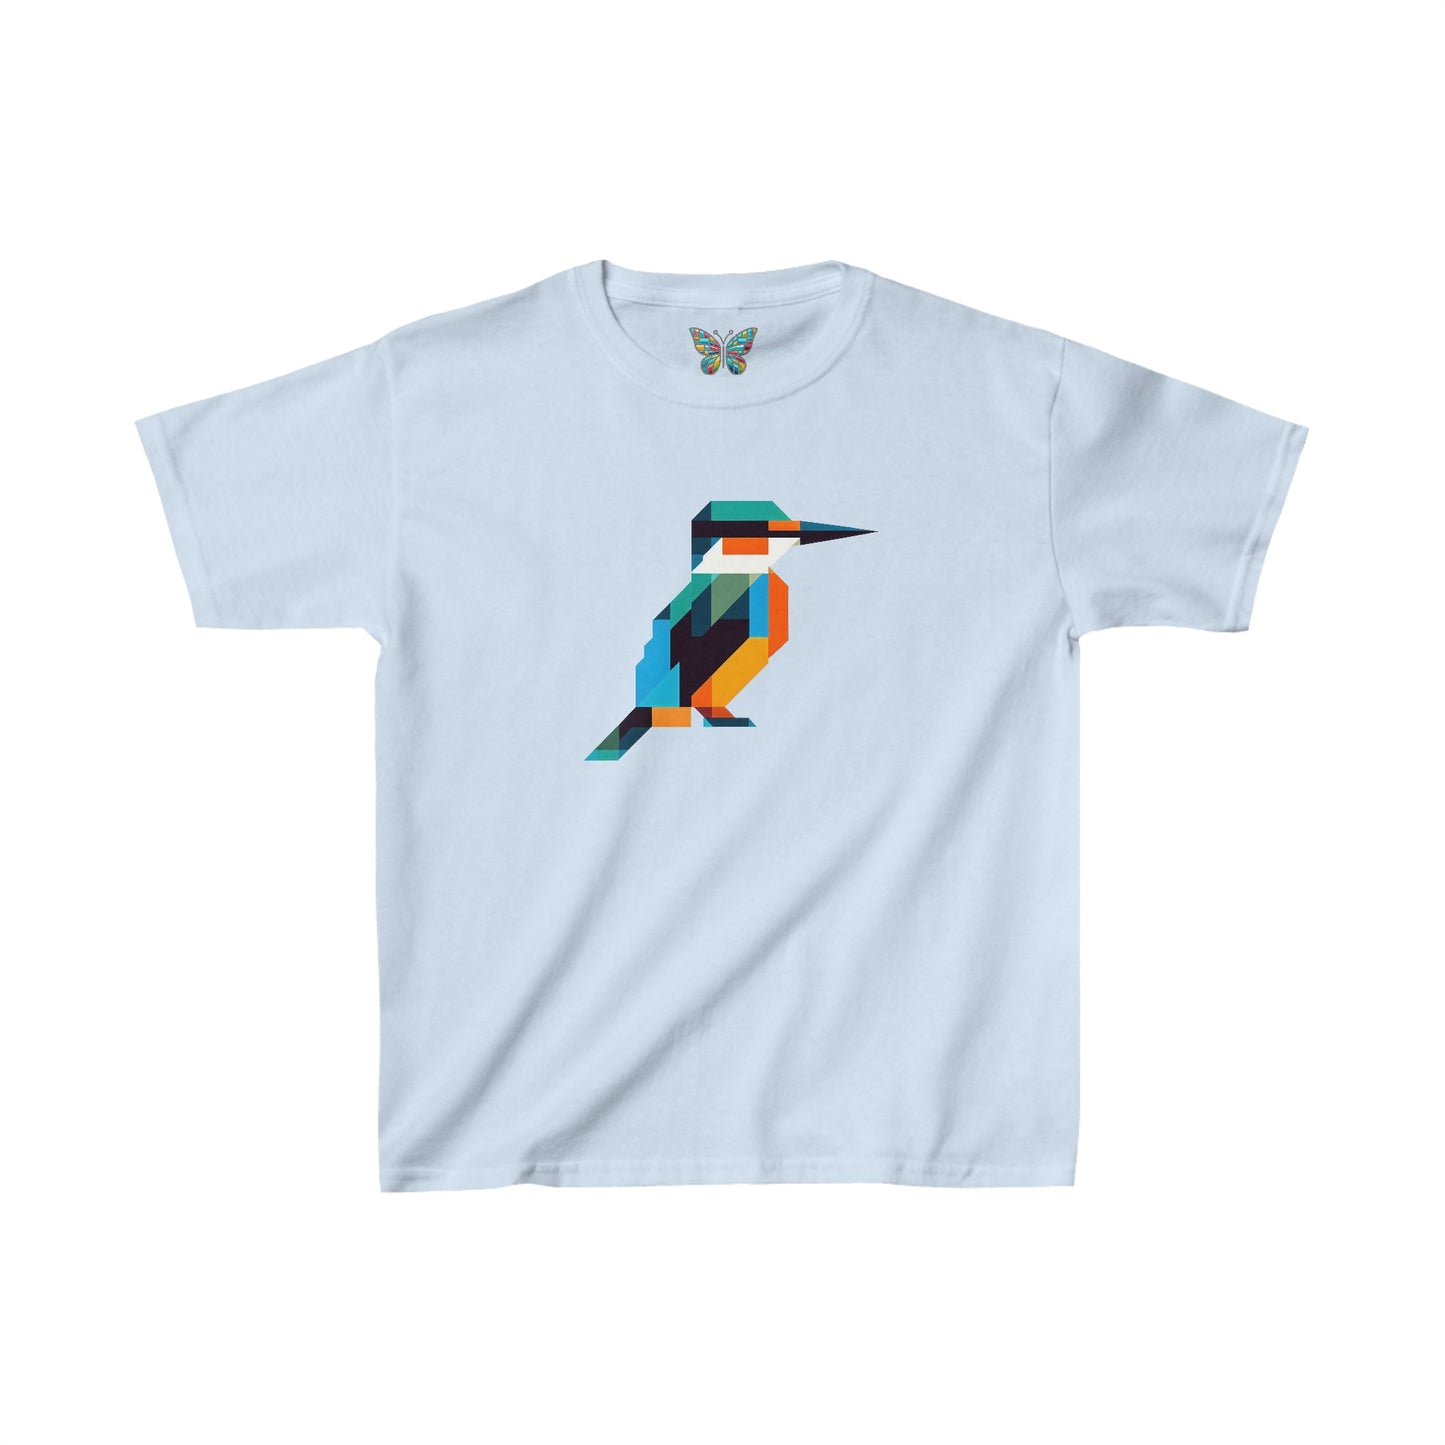 Kingfisher Euphorealis - Youth - Snazzle Tee